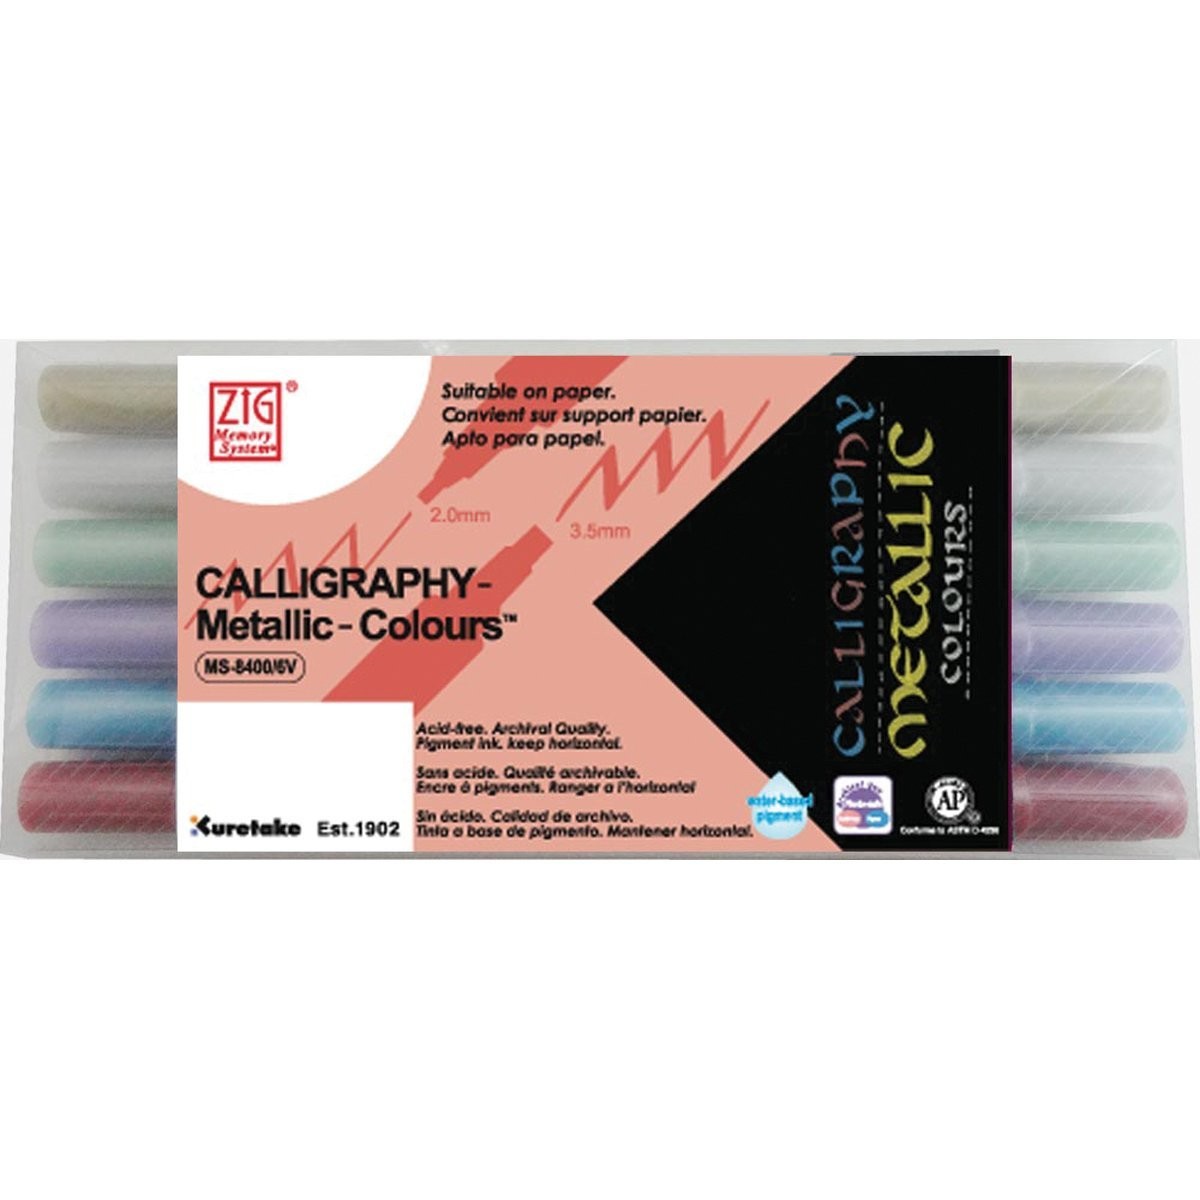 Набор маркеров для каллиграфии METALLIC CALLIGRAPHY d:2-3,5мм 6шт. пластиковая уп-ка по 1 290.00 руб от ZIG Kuretake